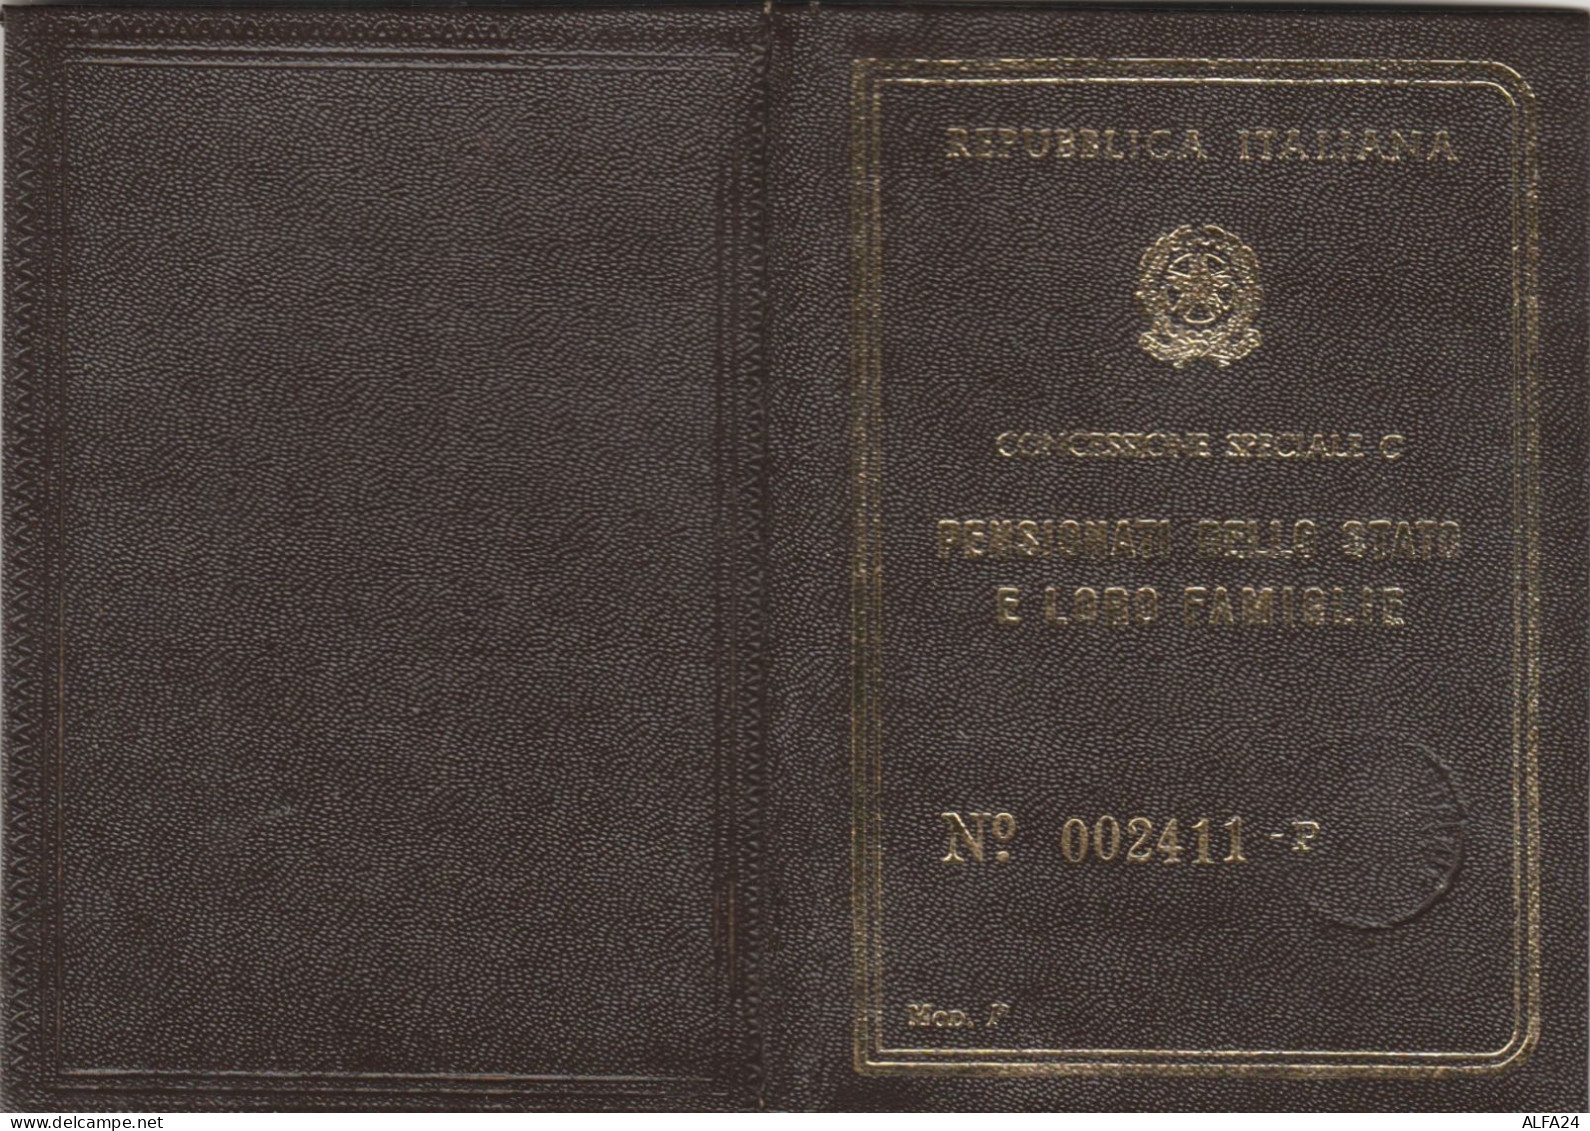 FERROVIE DELLO STATO CONCESSIONE C 1968 (XF122 - Europa